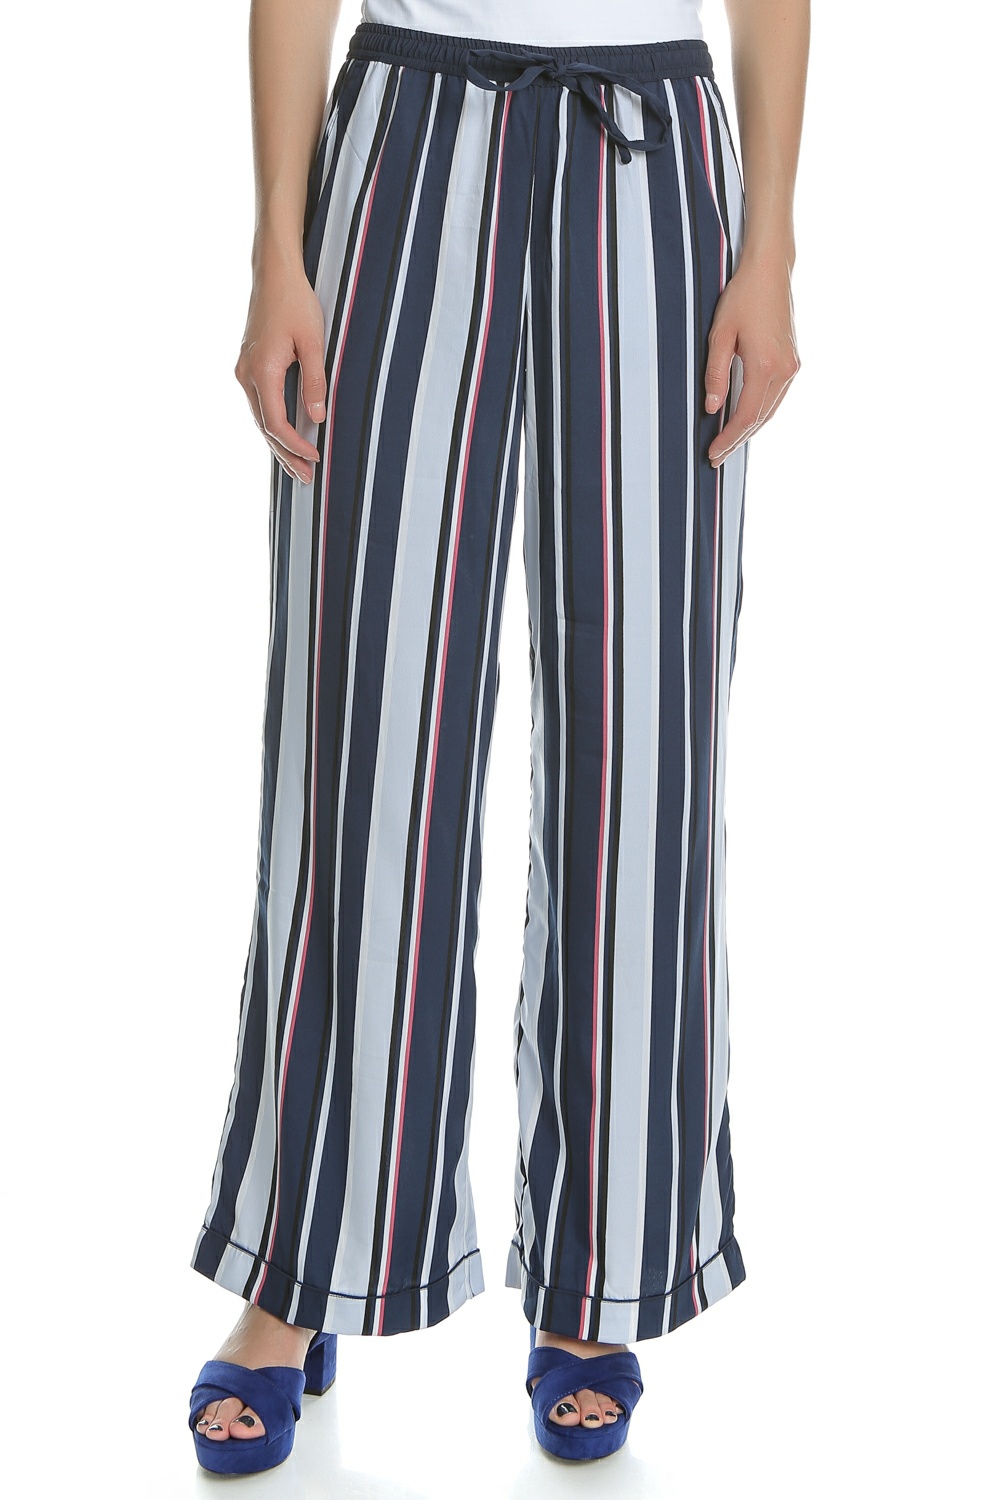 Γυναικεία/Ρούχα/Παντελόνια/Παντελόνες GARCIA JEANS - Γυναικεία παντελόνα Garcia Jeans μπλε - κόκκινη - λευκή